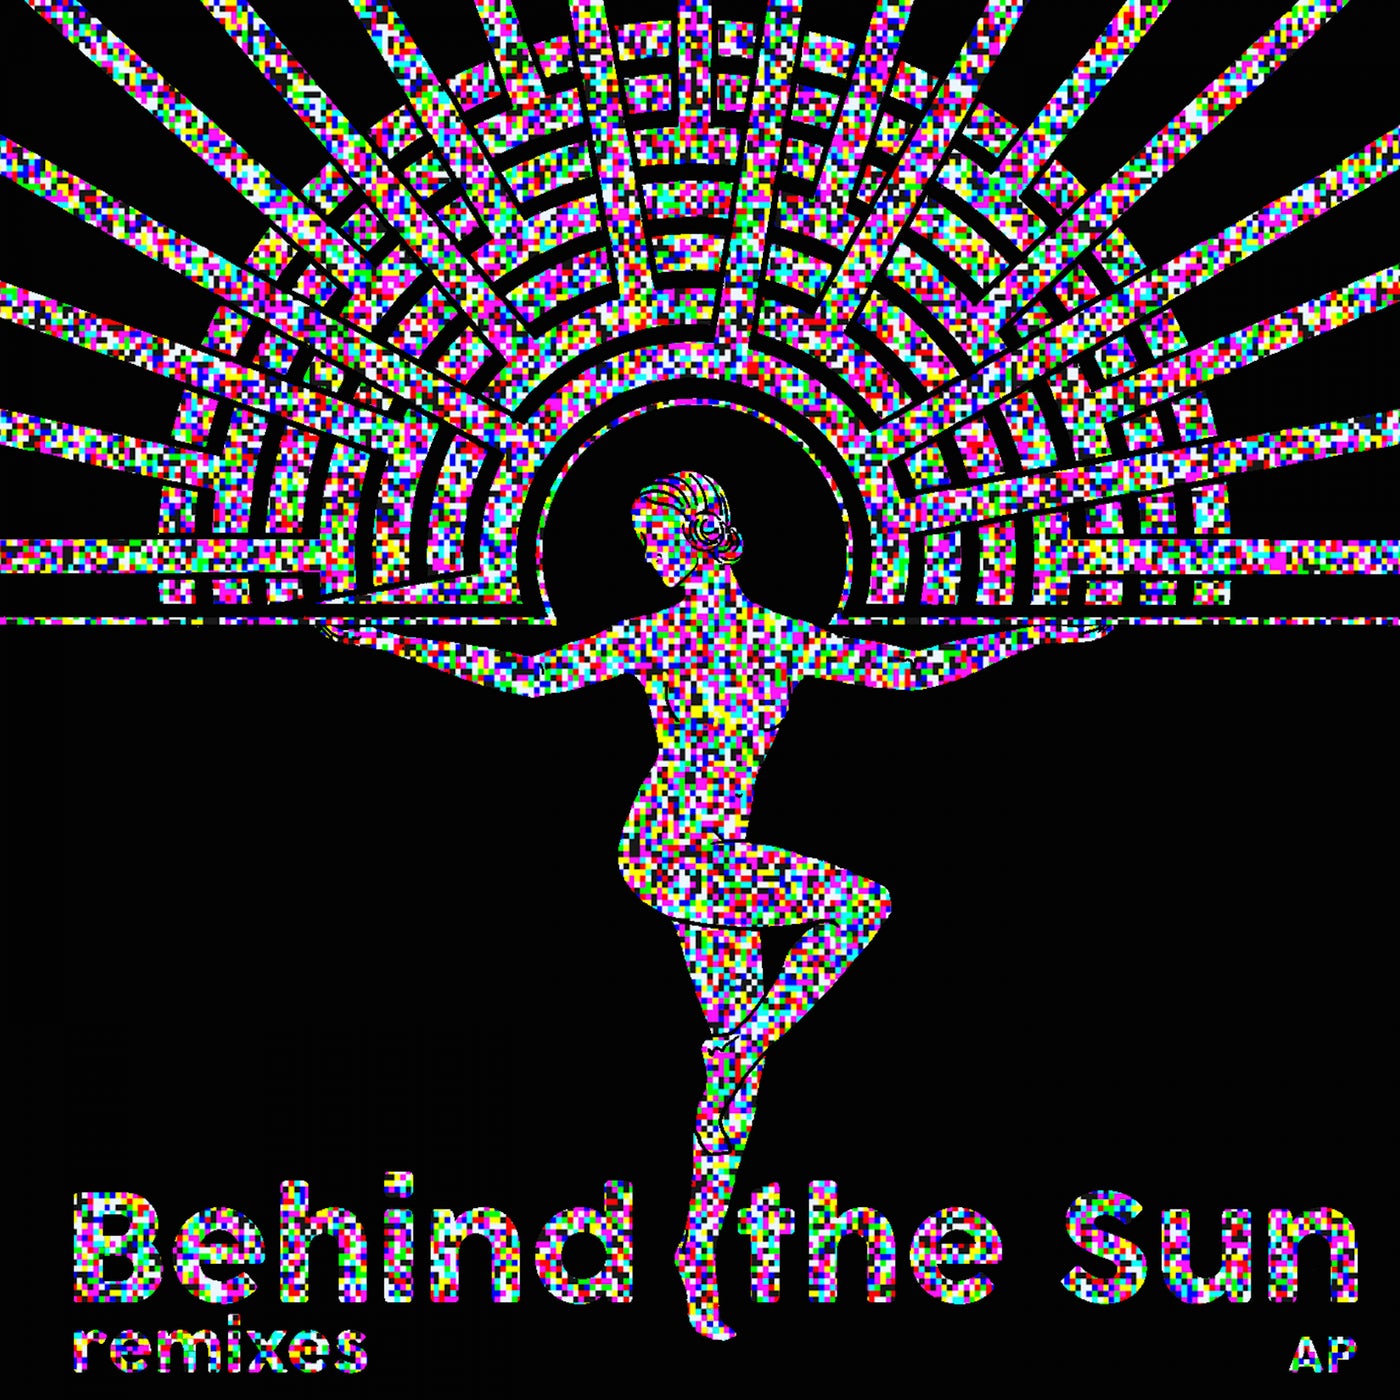 Behind The Sun Remixes